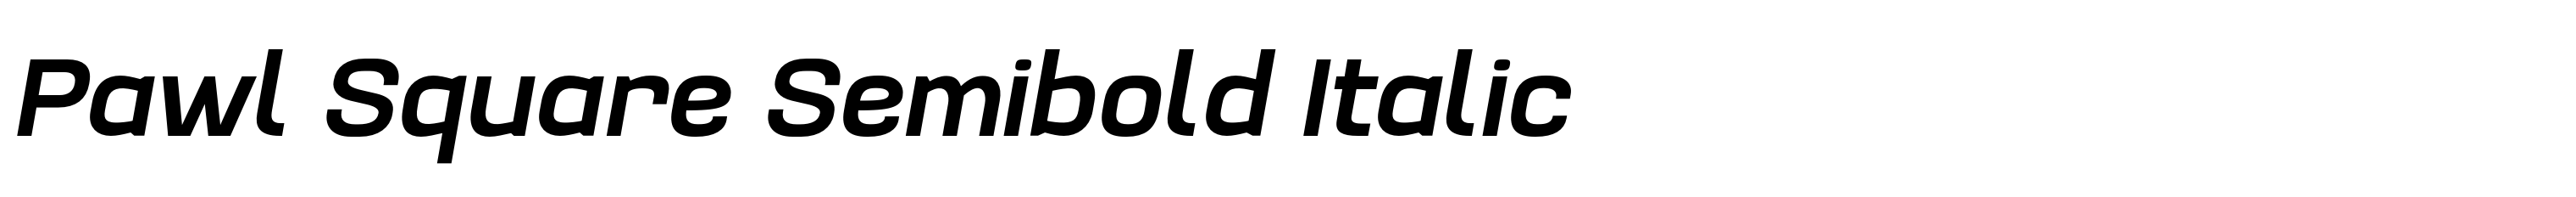 Pawl Square Semibold Italic